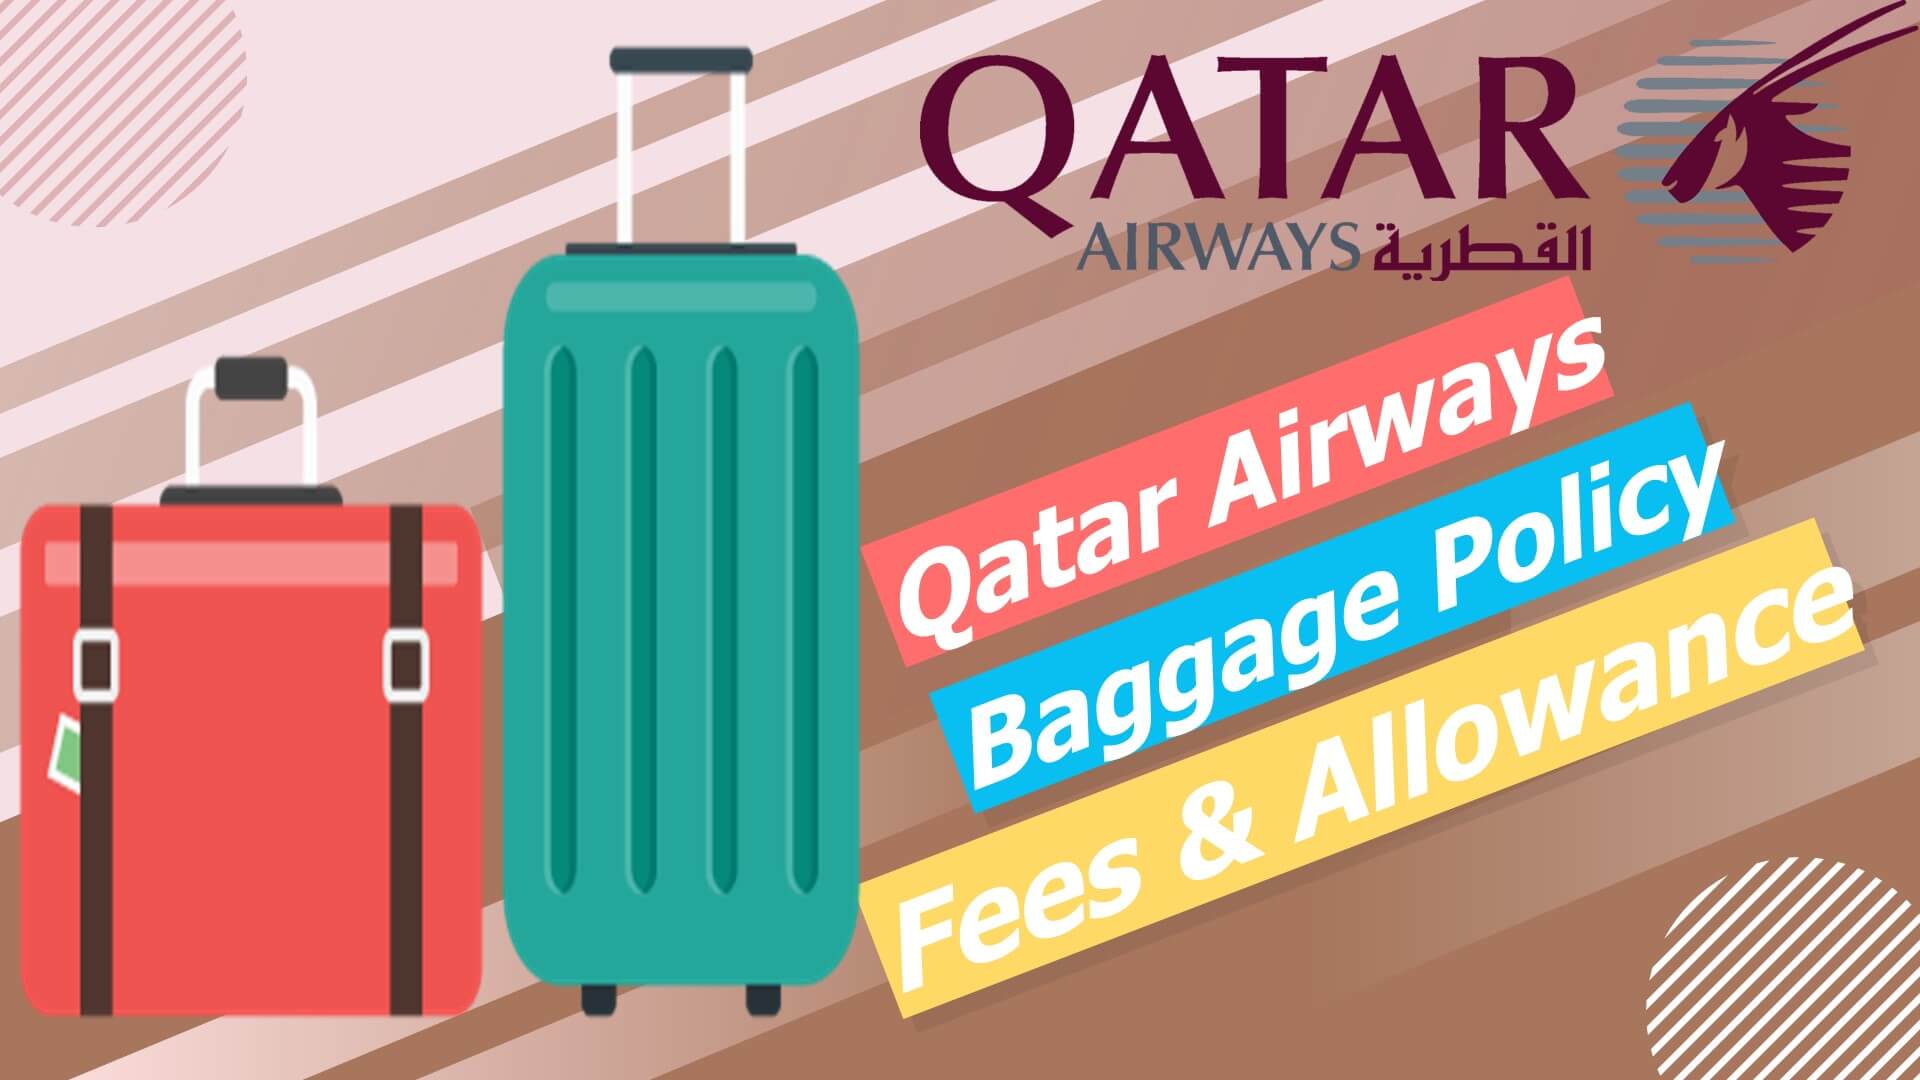 shop ticket and travel bundles with qatar airways